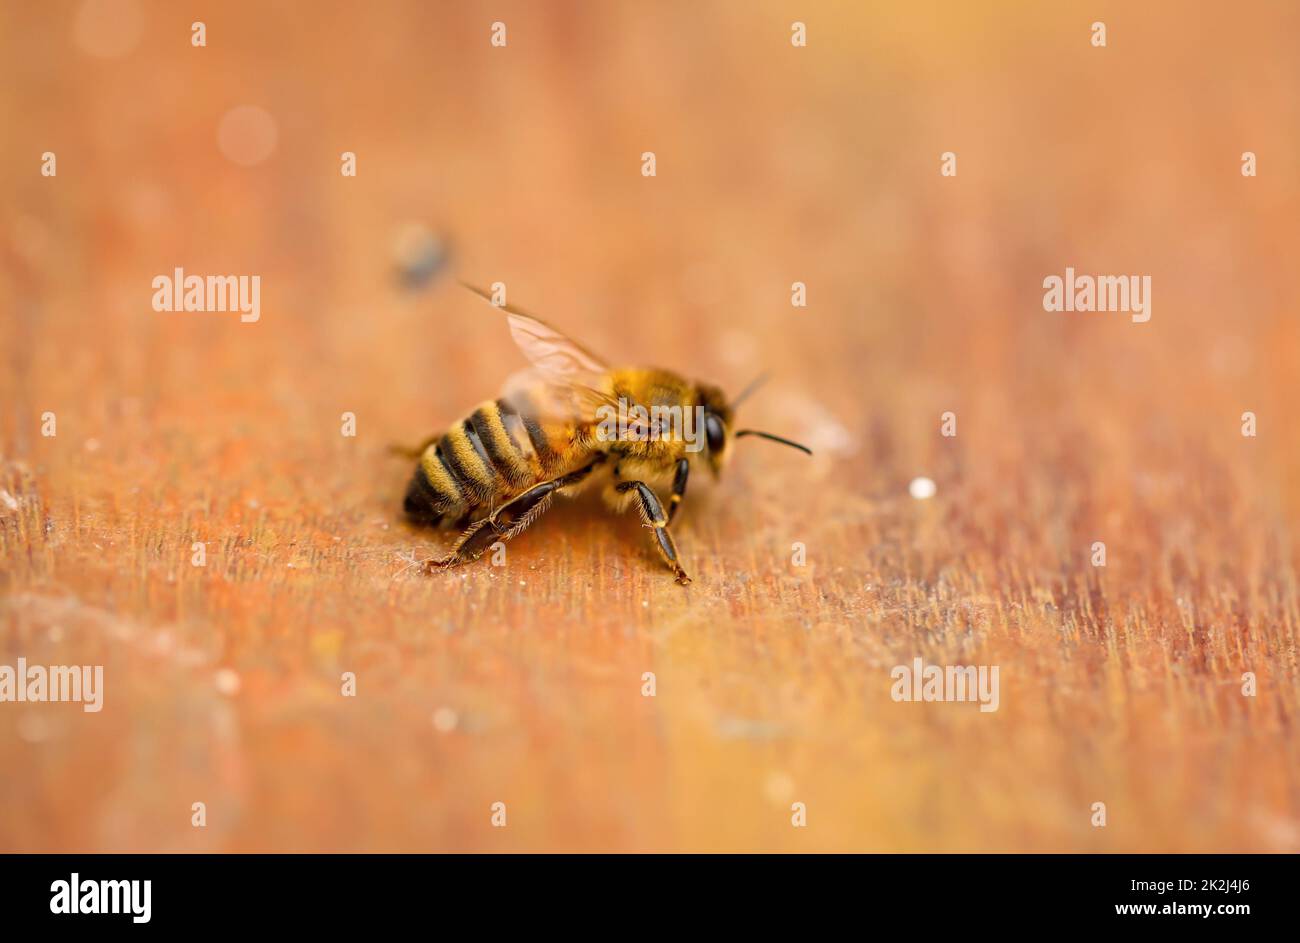 Una abeja sobre una tabla de madera. Las abejas son insectos estado-formando. Foto de stock